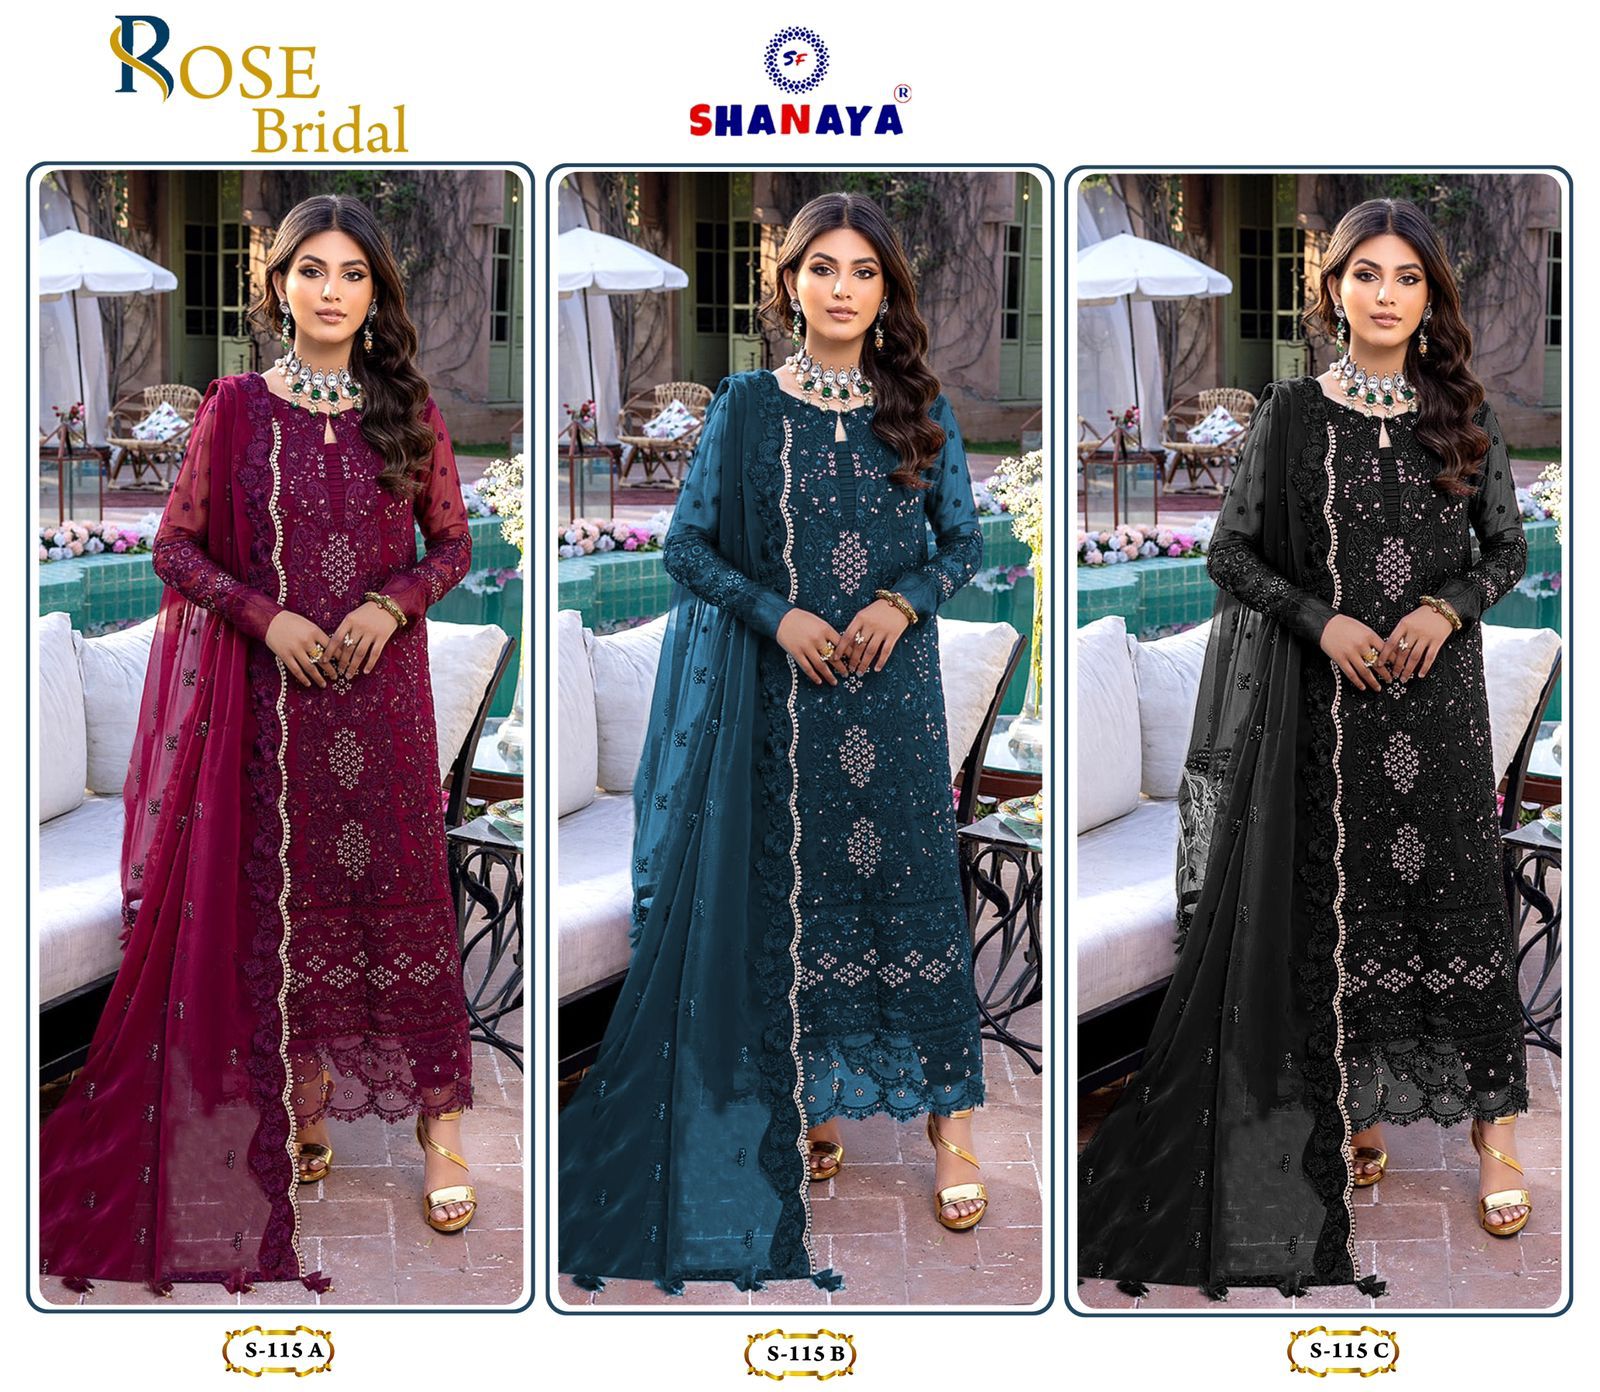 Shanaya Fashion Rose Bridal S-115 Colors 